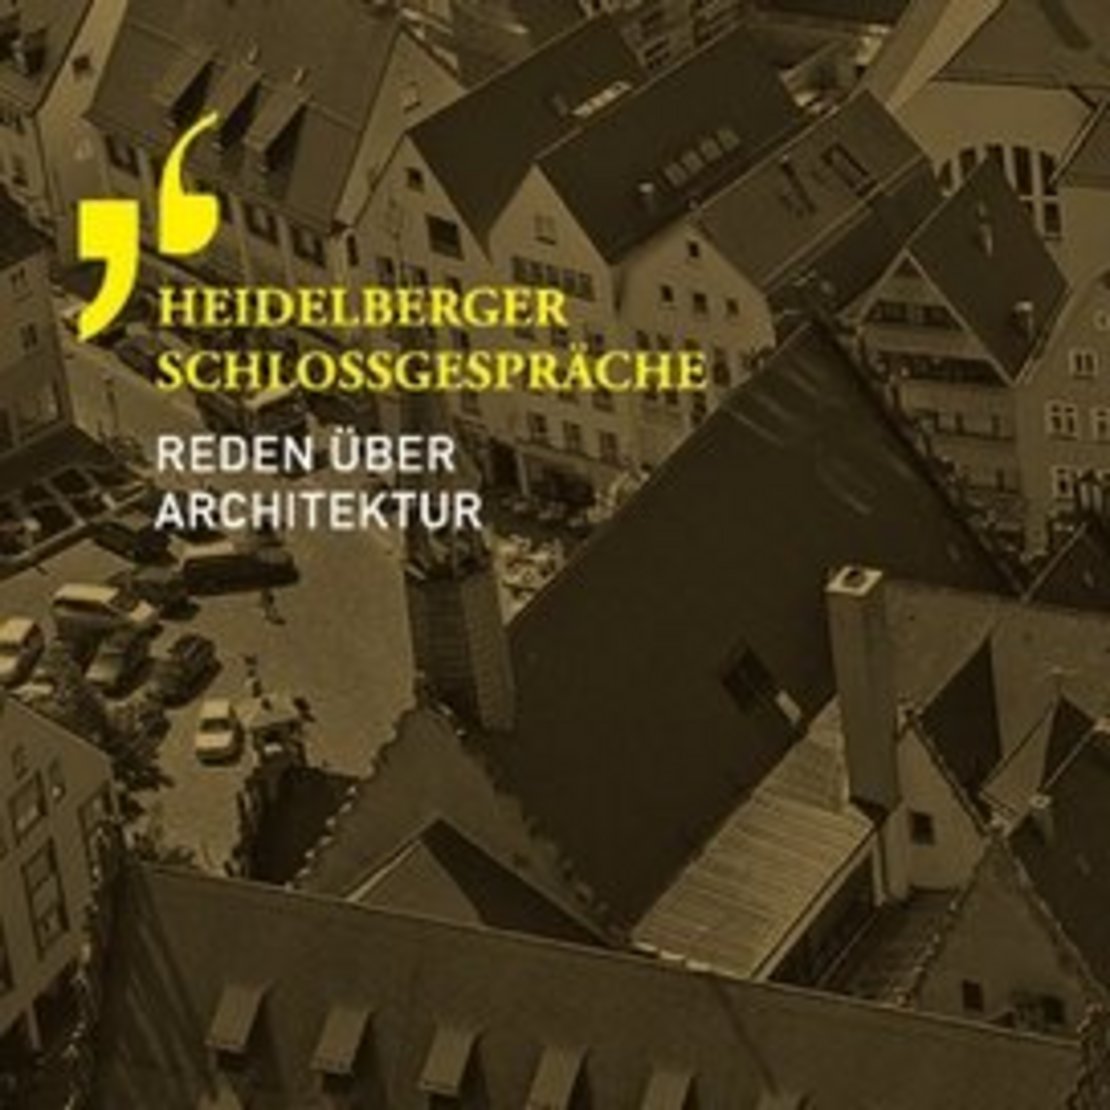 Heidelberger Schlossgespräche – Reden über Architektur